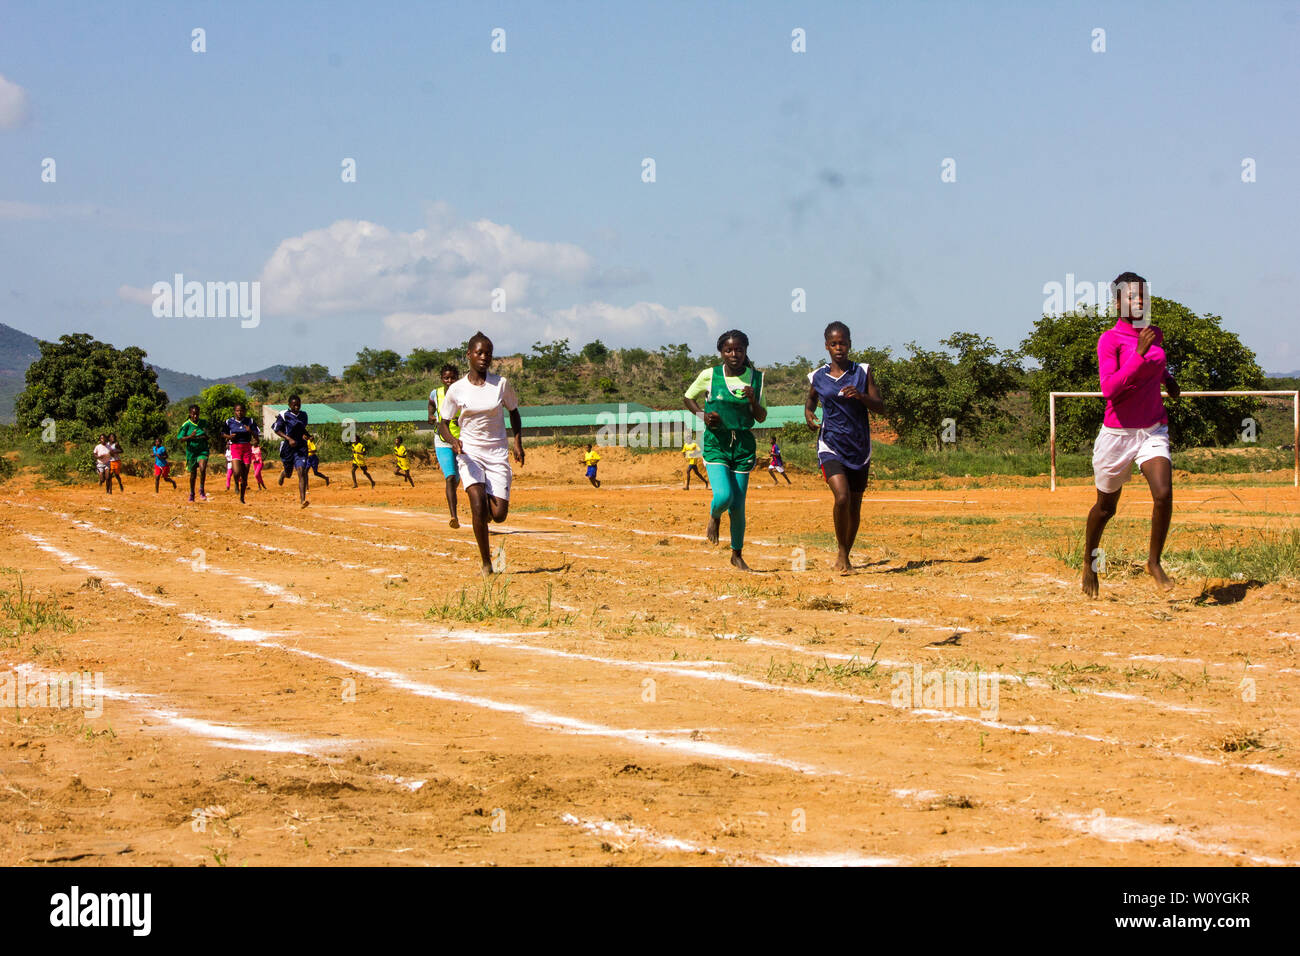 Highschool-Mädchen, die in ihrem Sportunterricht an einer Laufveranstaltung teilnehmen Stockfoto